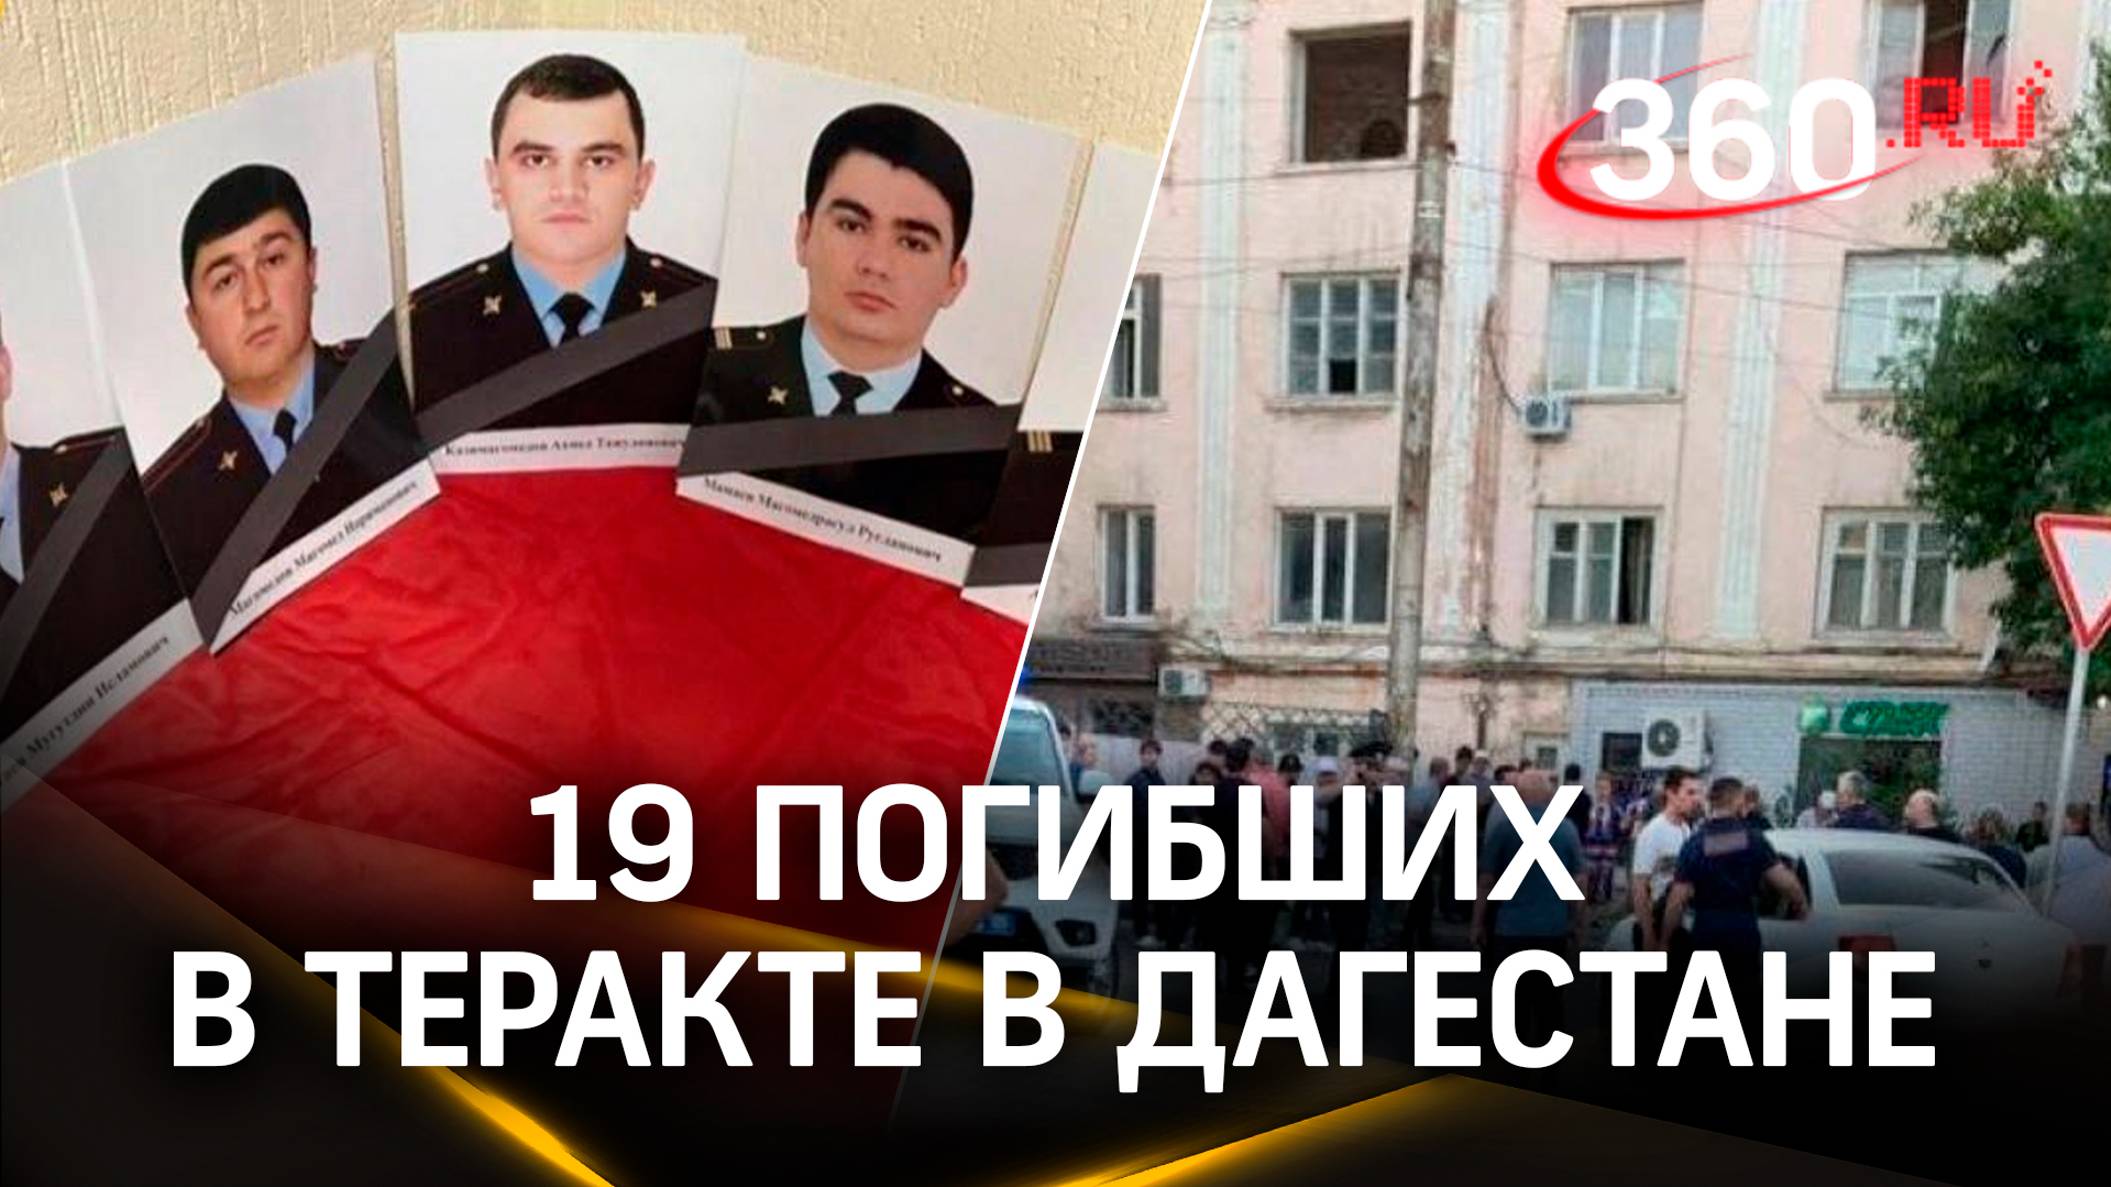 15 полицейских и четверо жителей погибли при теракте в Дагестане. Пятерых боевиков ликвидировали – С